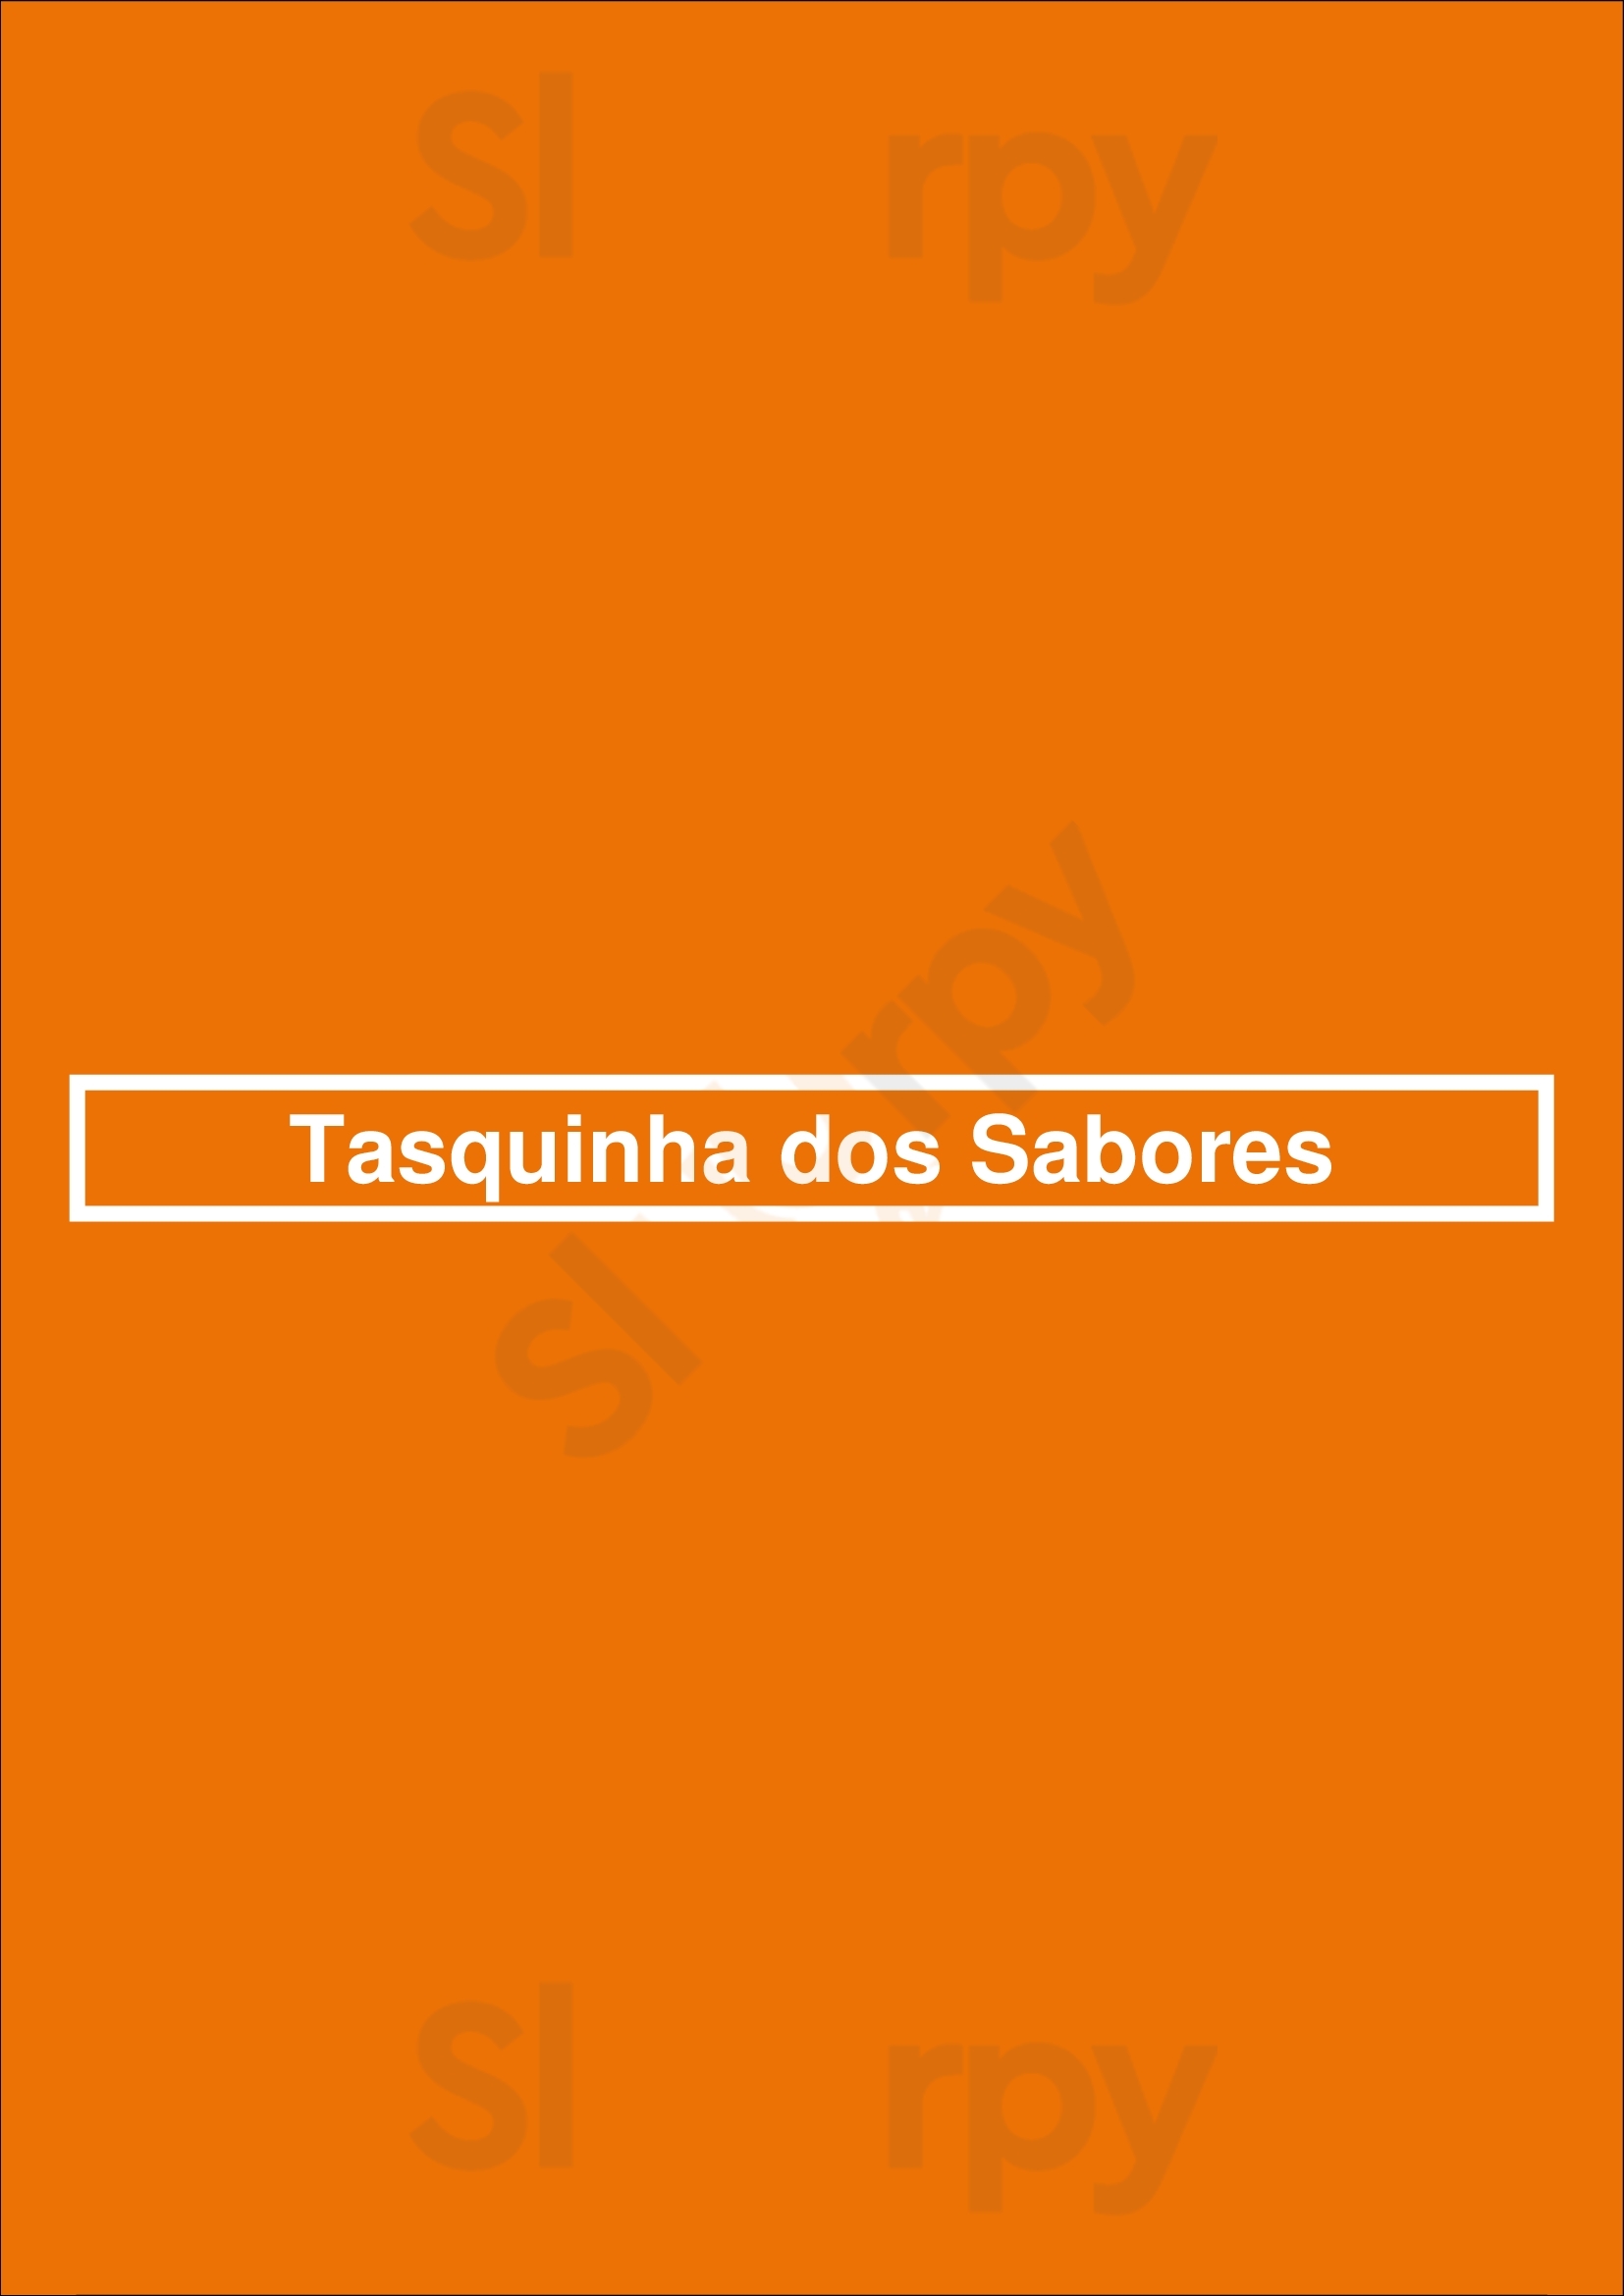 Tasquinha Dos Sabores Porto Menu - 1